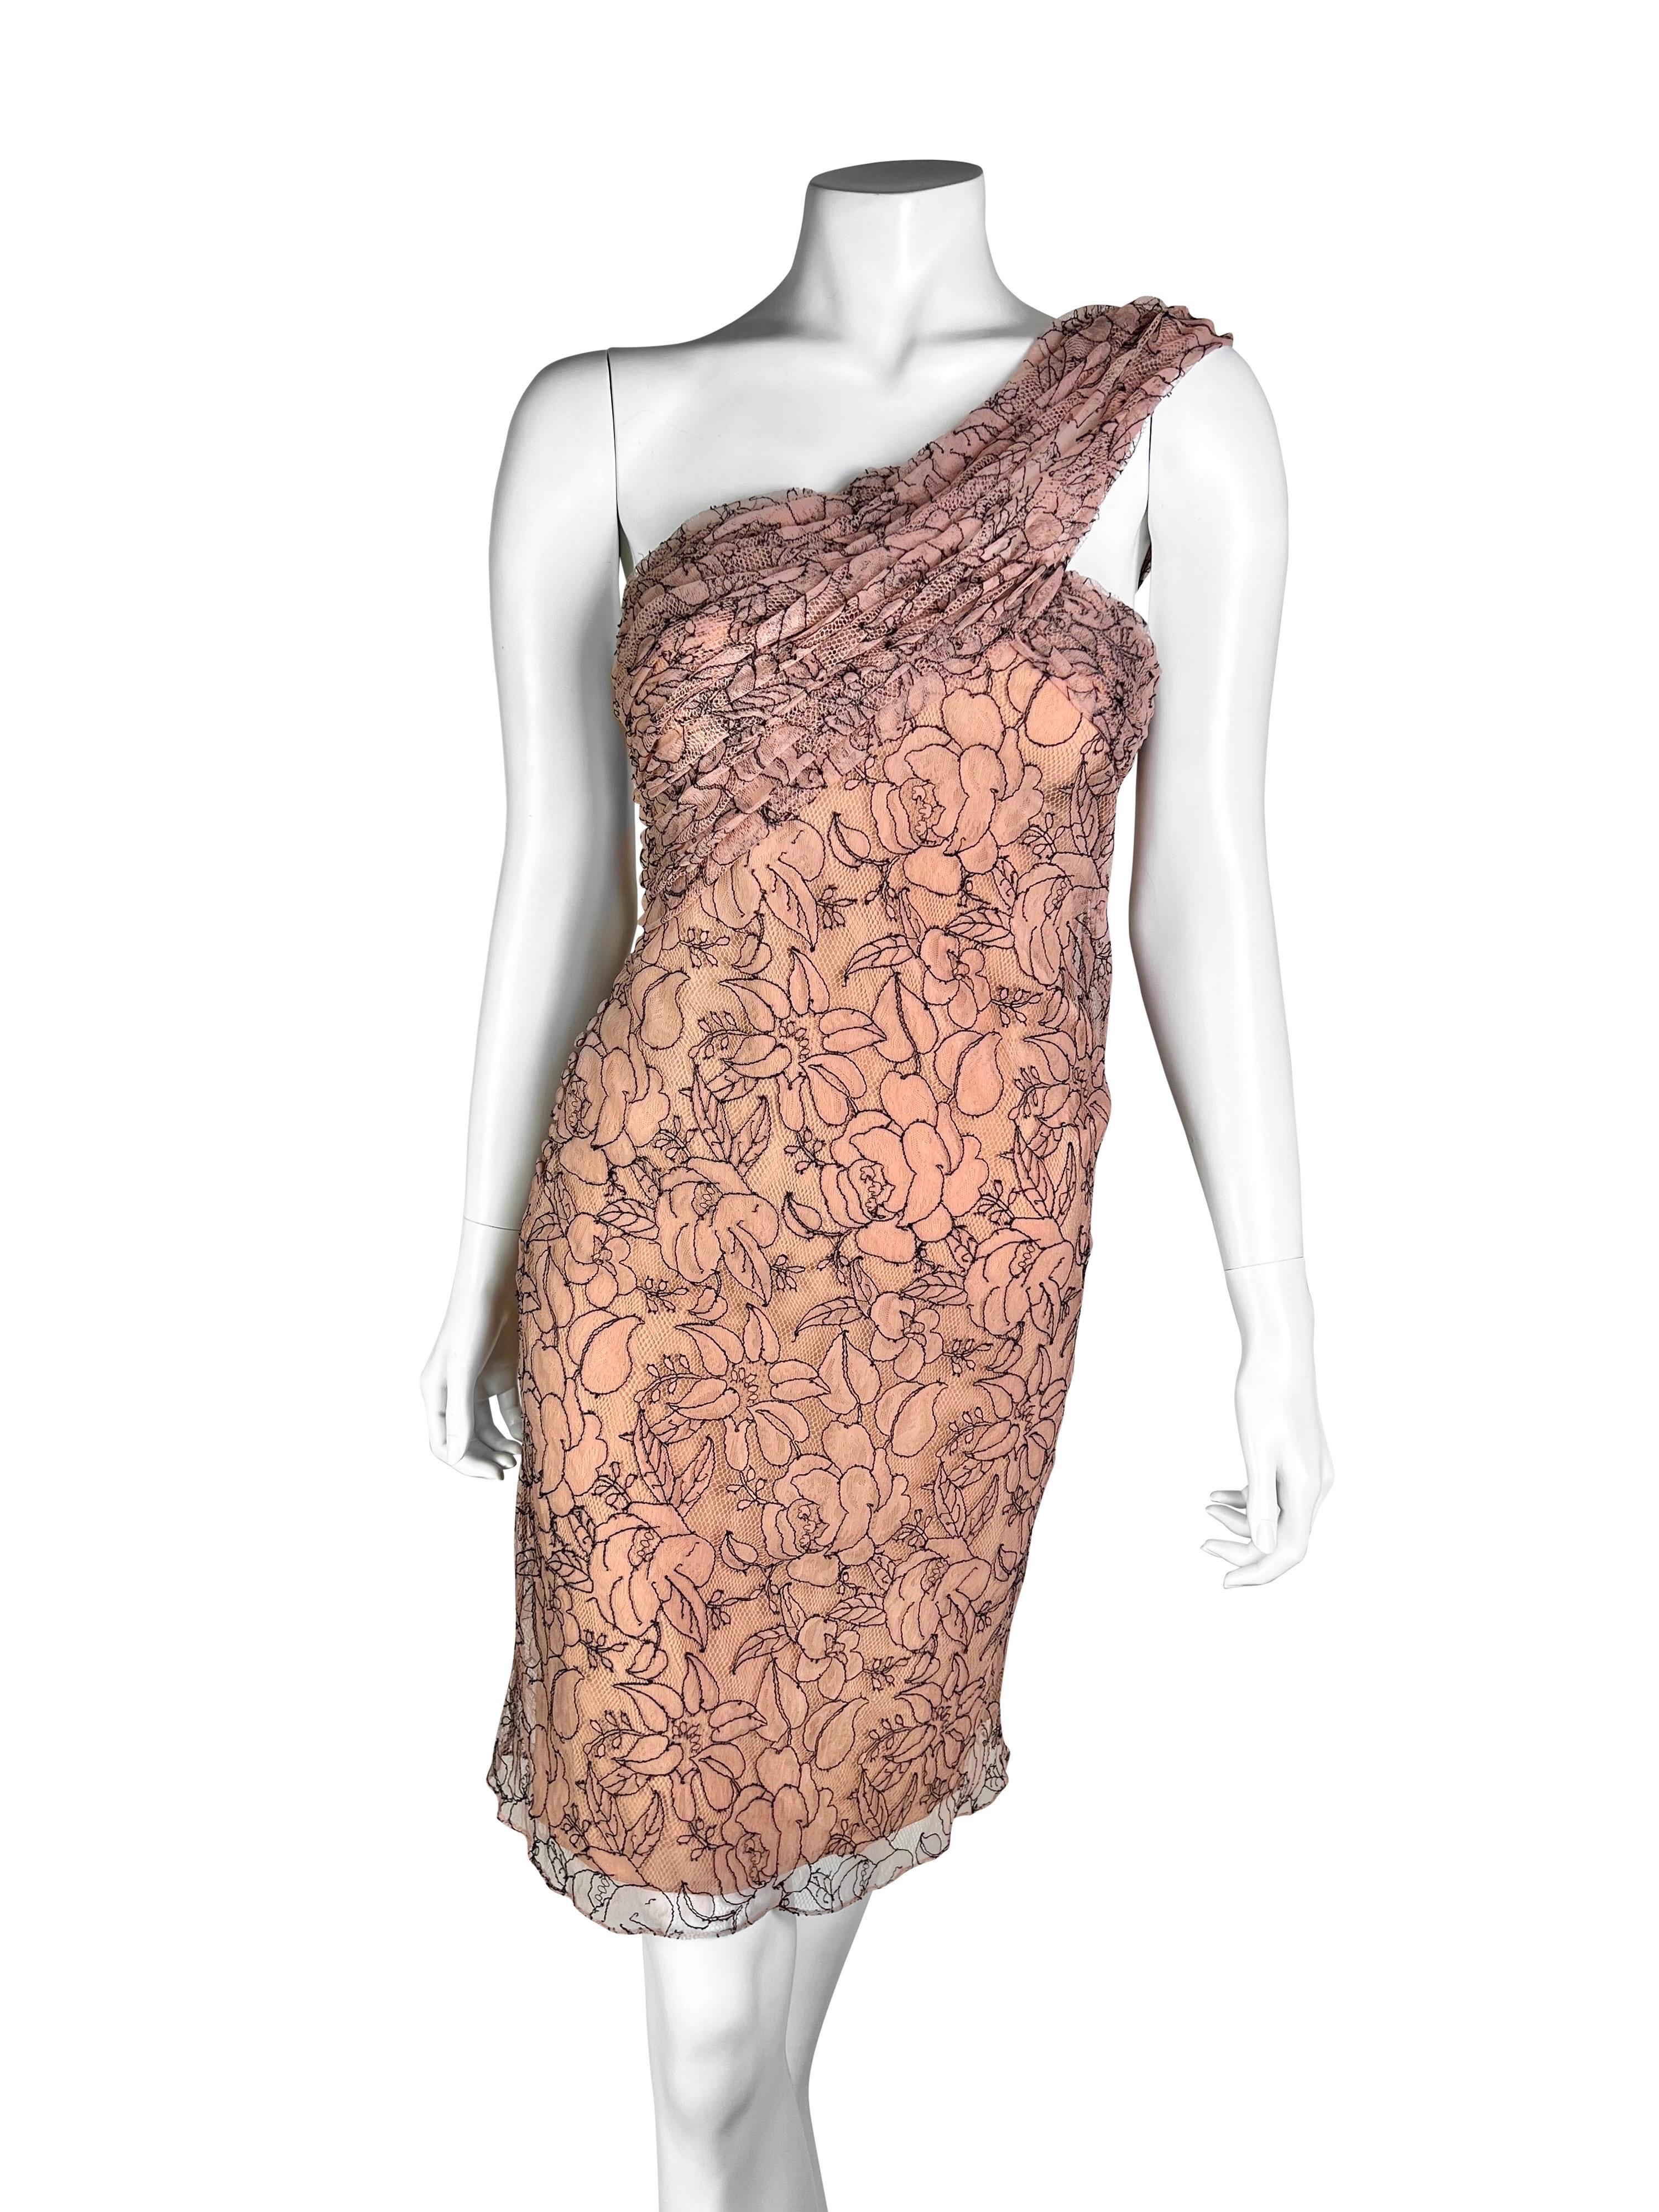 Une superbe robe en soie avec une magnifique couche de dentelle complexe, signature de la collection, couleur neutre, très flatteuse sur différentes carnations. 

Taille FR 38.

Mesures (à plat sur un côté) :
- D'aisselle à aisselle - 41 cm (16